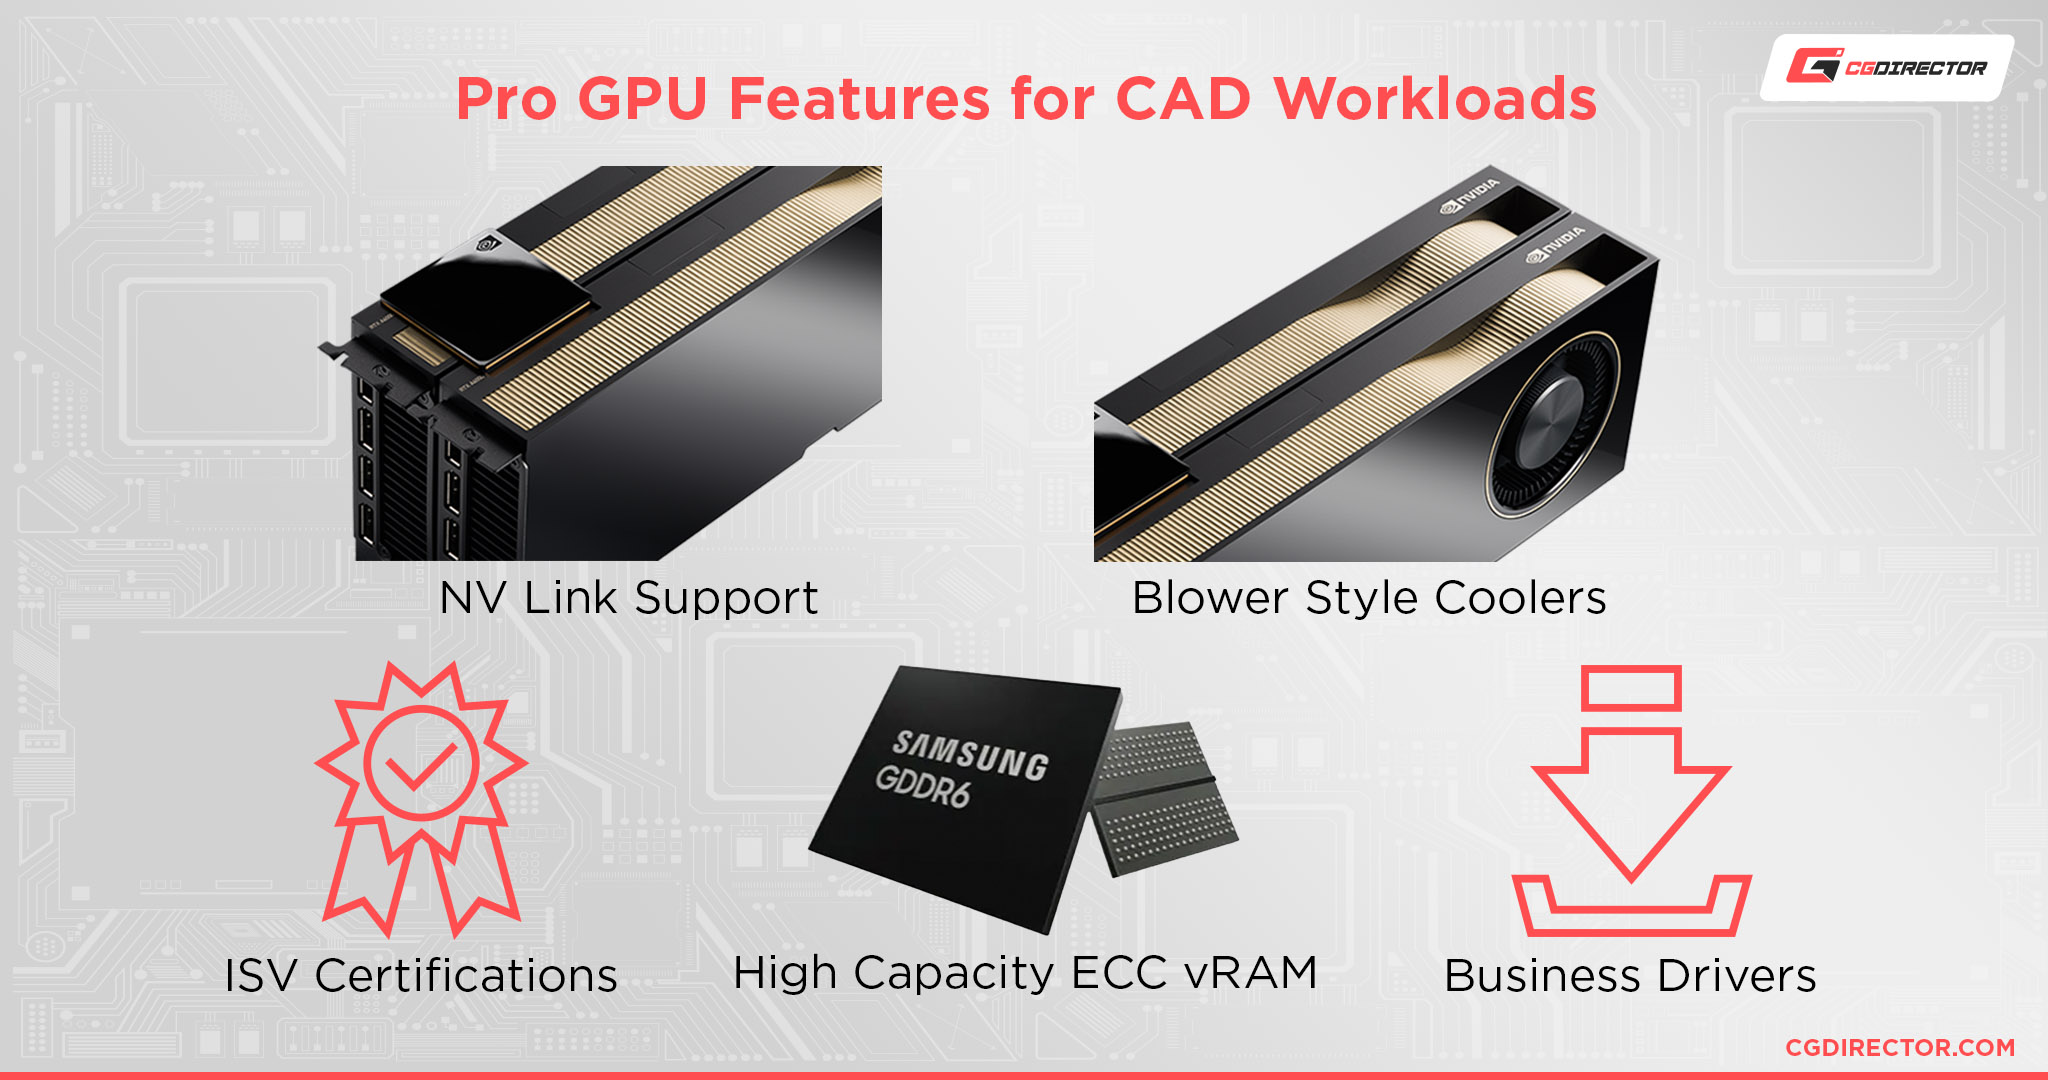 ميزات GPU Pro لأعباء عمل CAD